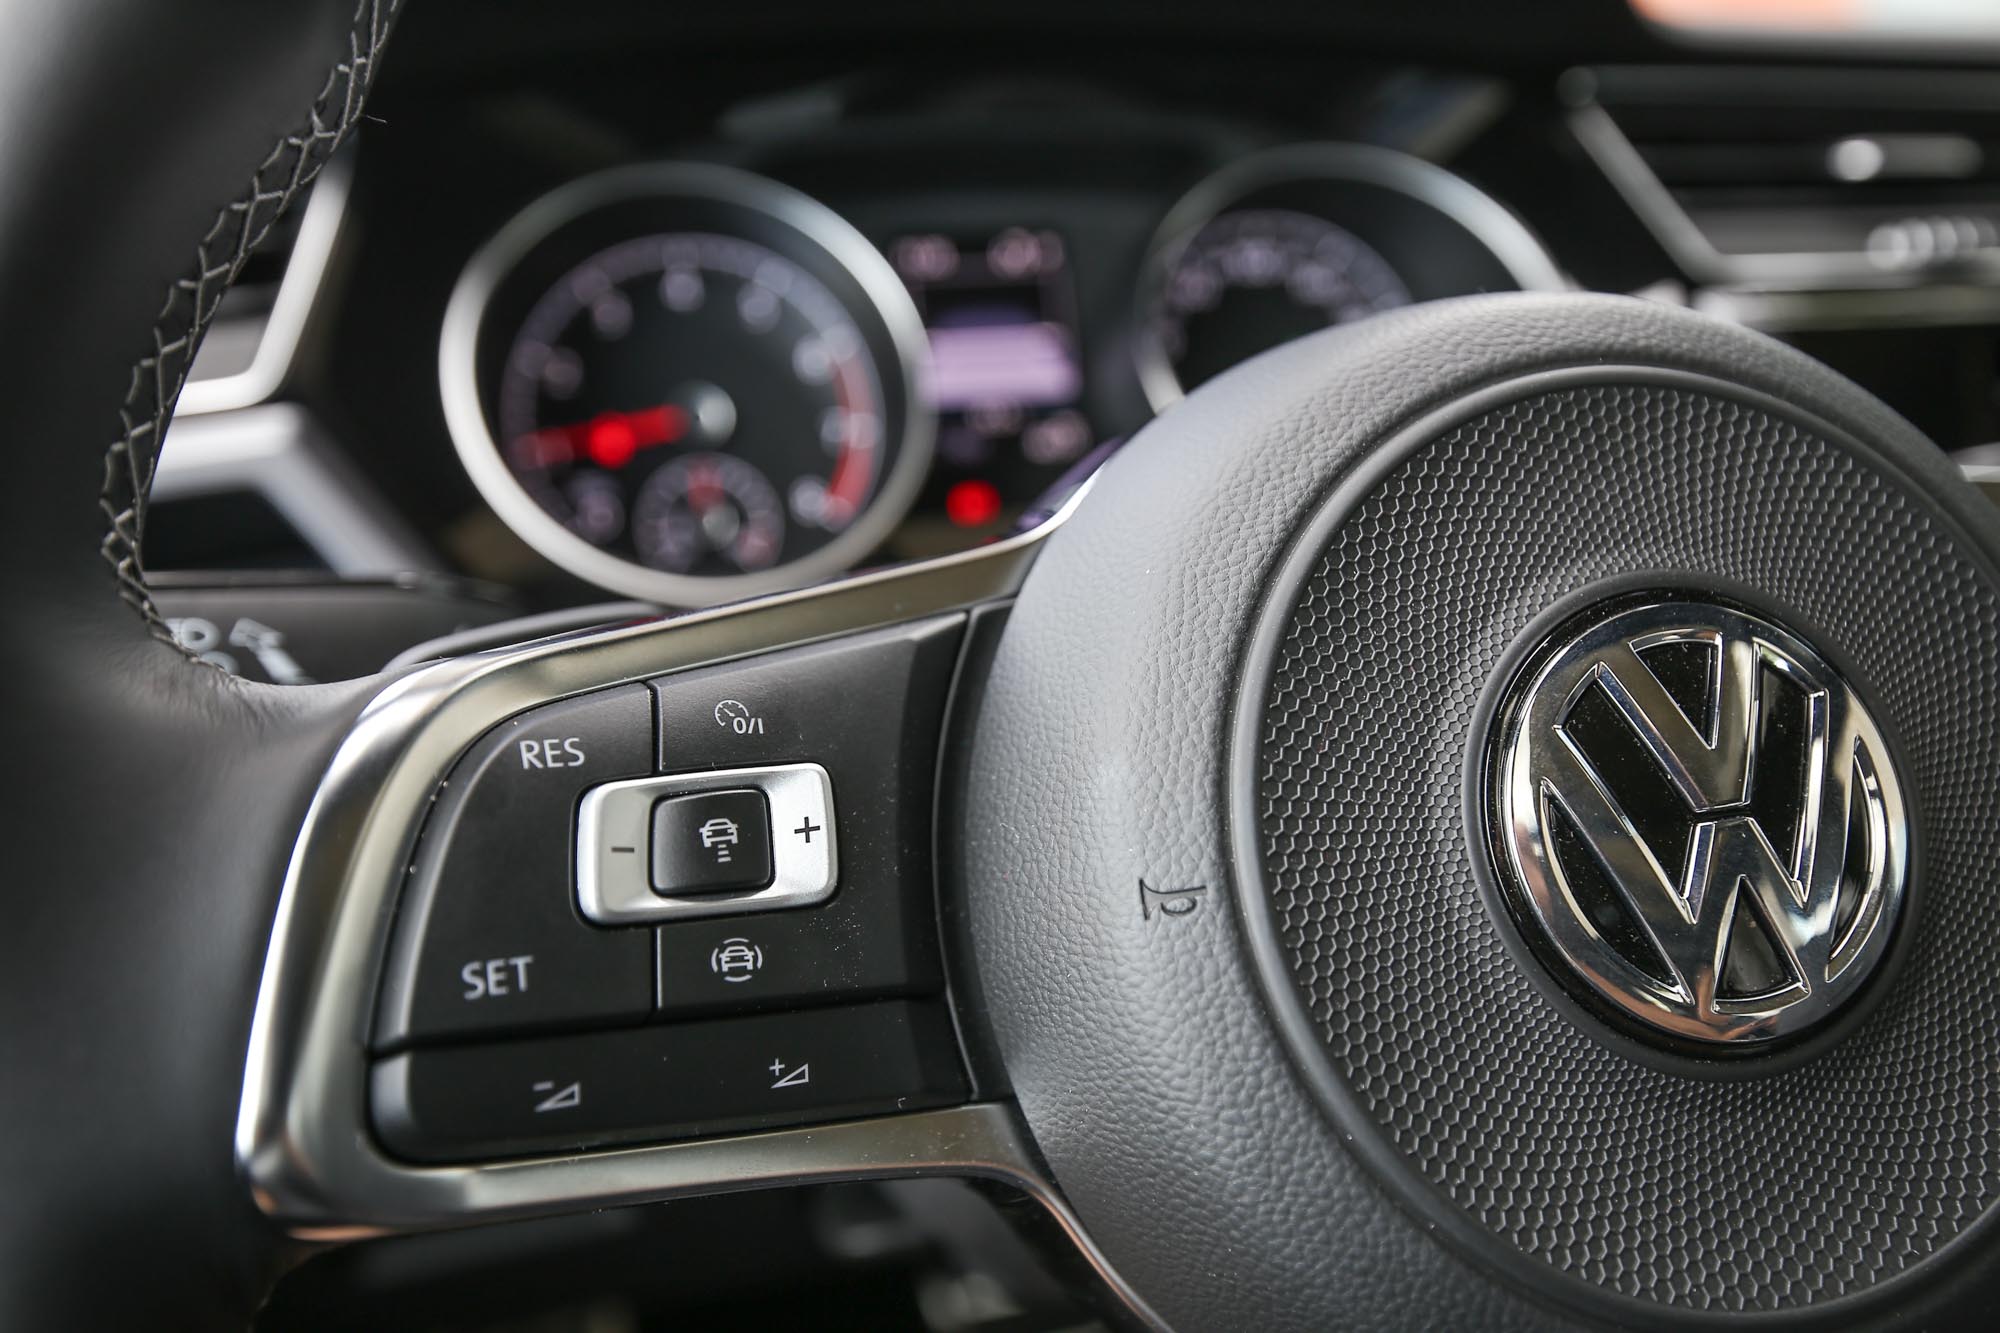 ACC 主動式固定車距巡航系統控制介面位於方向盤左側。